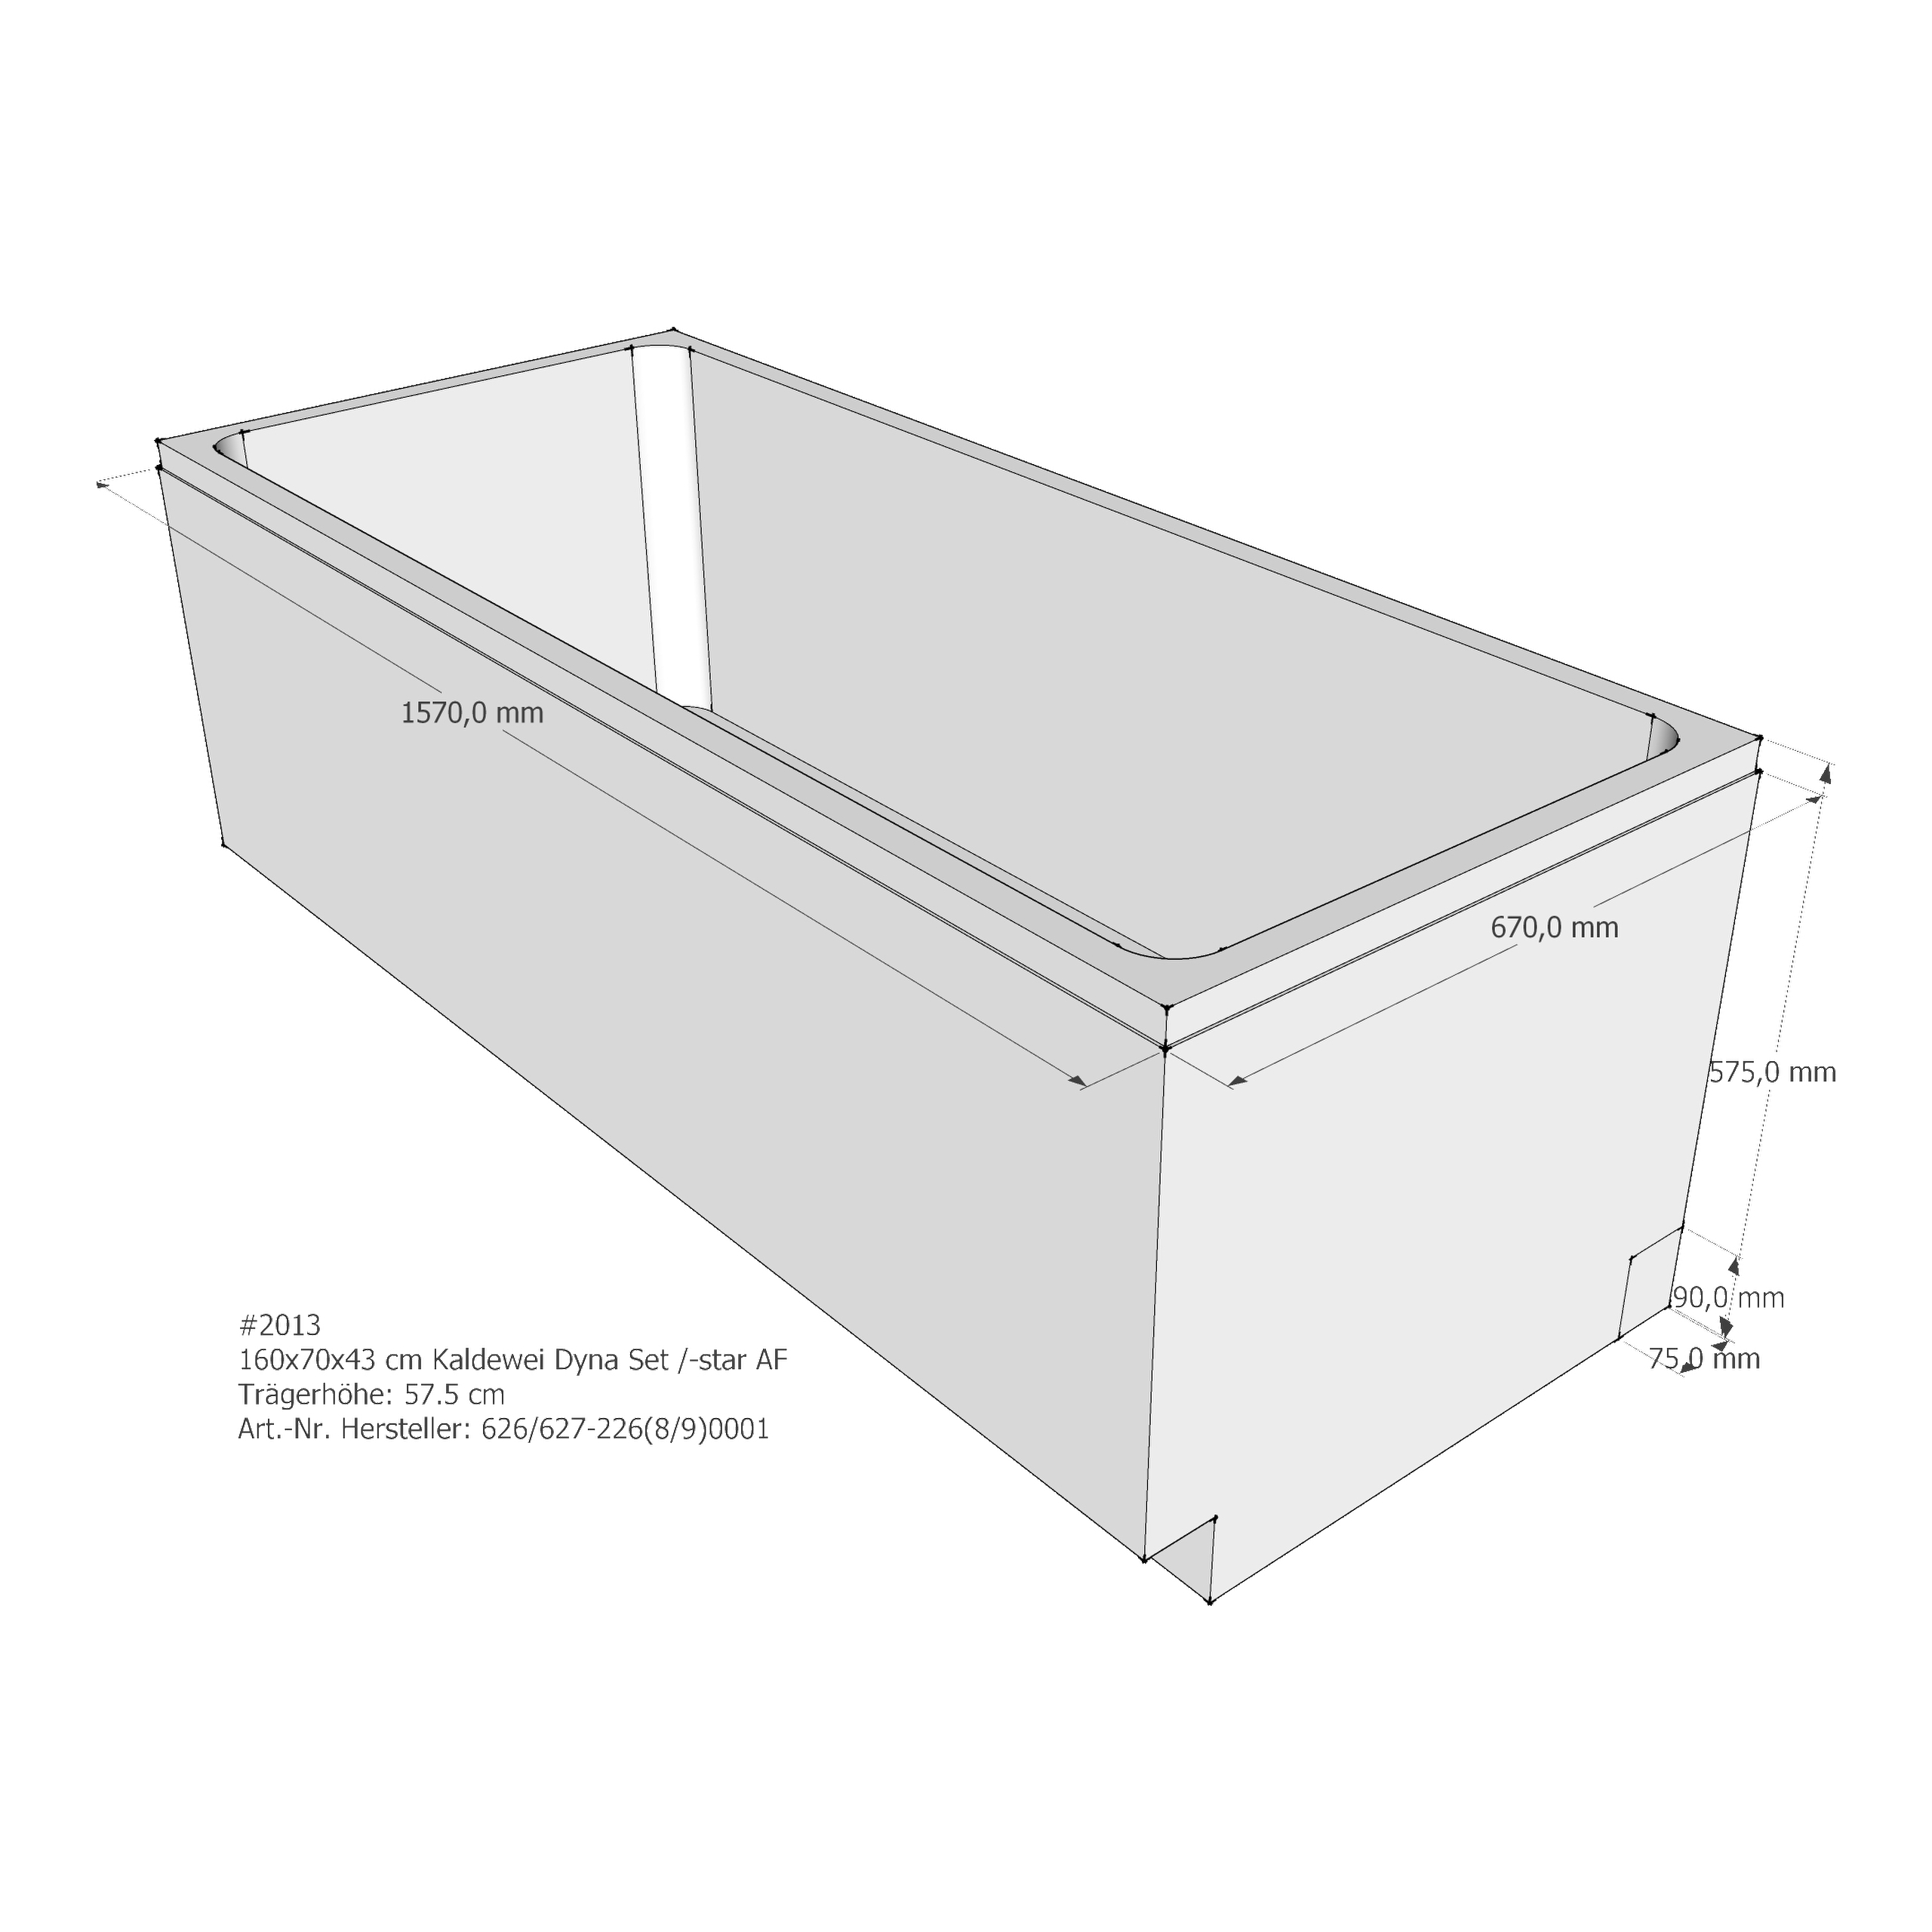 Badewannenträger für Kaldewei Dyna Set /-Star 160 × 70 × 43 cm